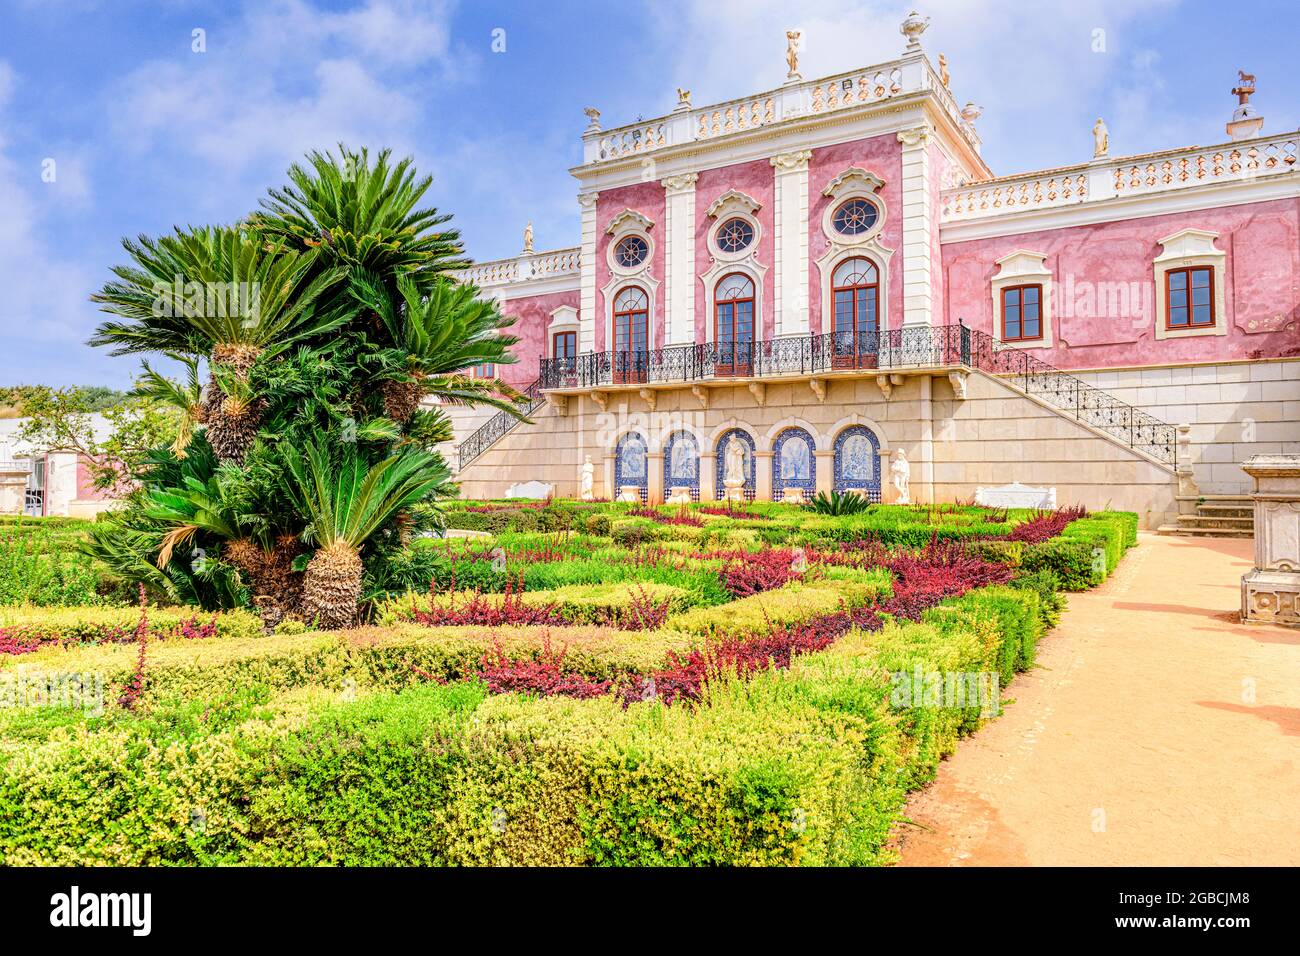 Le palais Estoi rose et une partie de jardins formels, Palacio de Estoi un bel exemple d'architecture rococo fait maintenant partie d'un hôtel. Estoi Algarve Portugal Banque D'Images